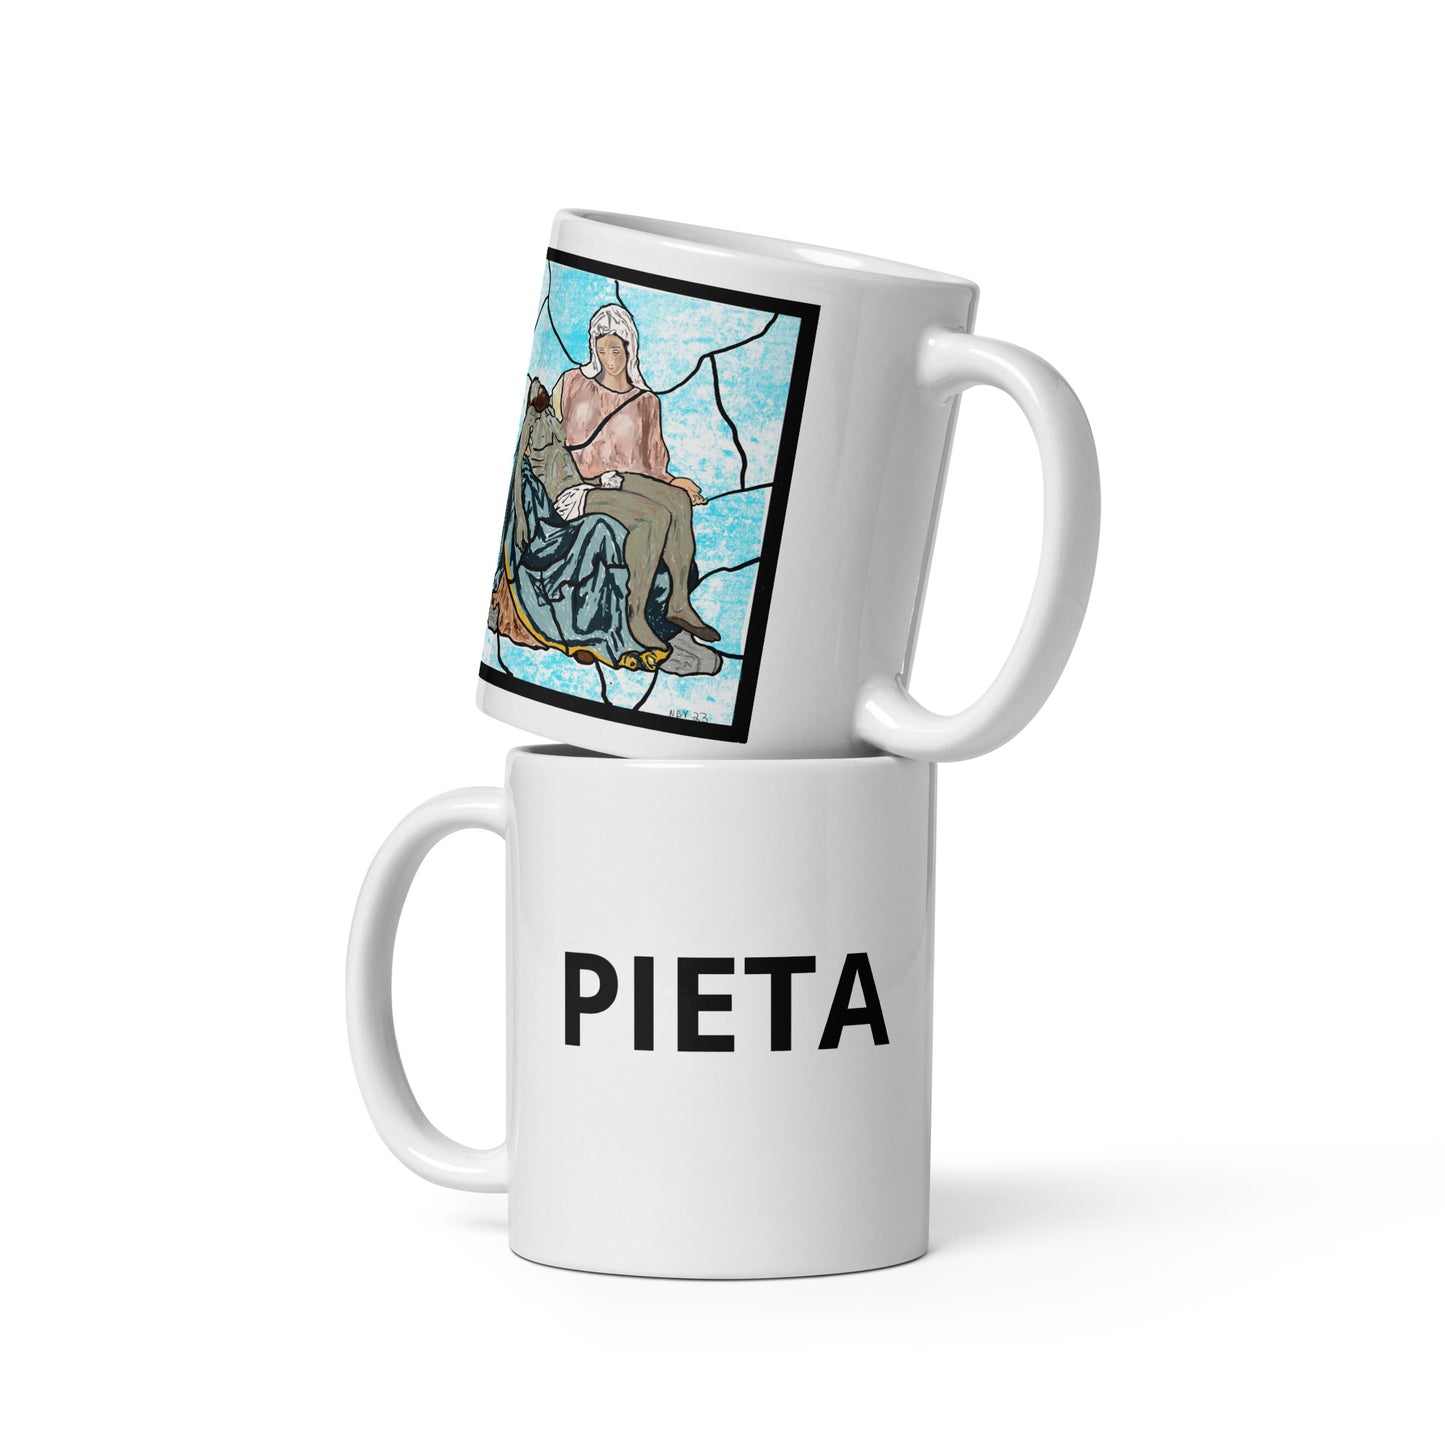 Pieta Mug